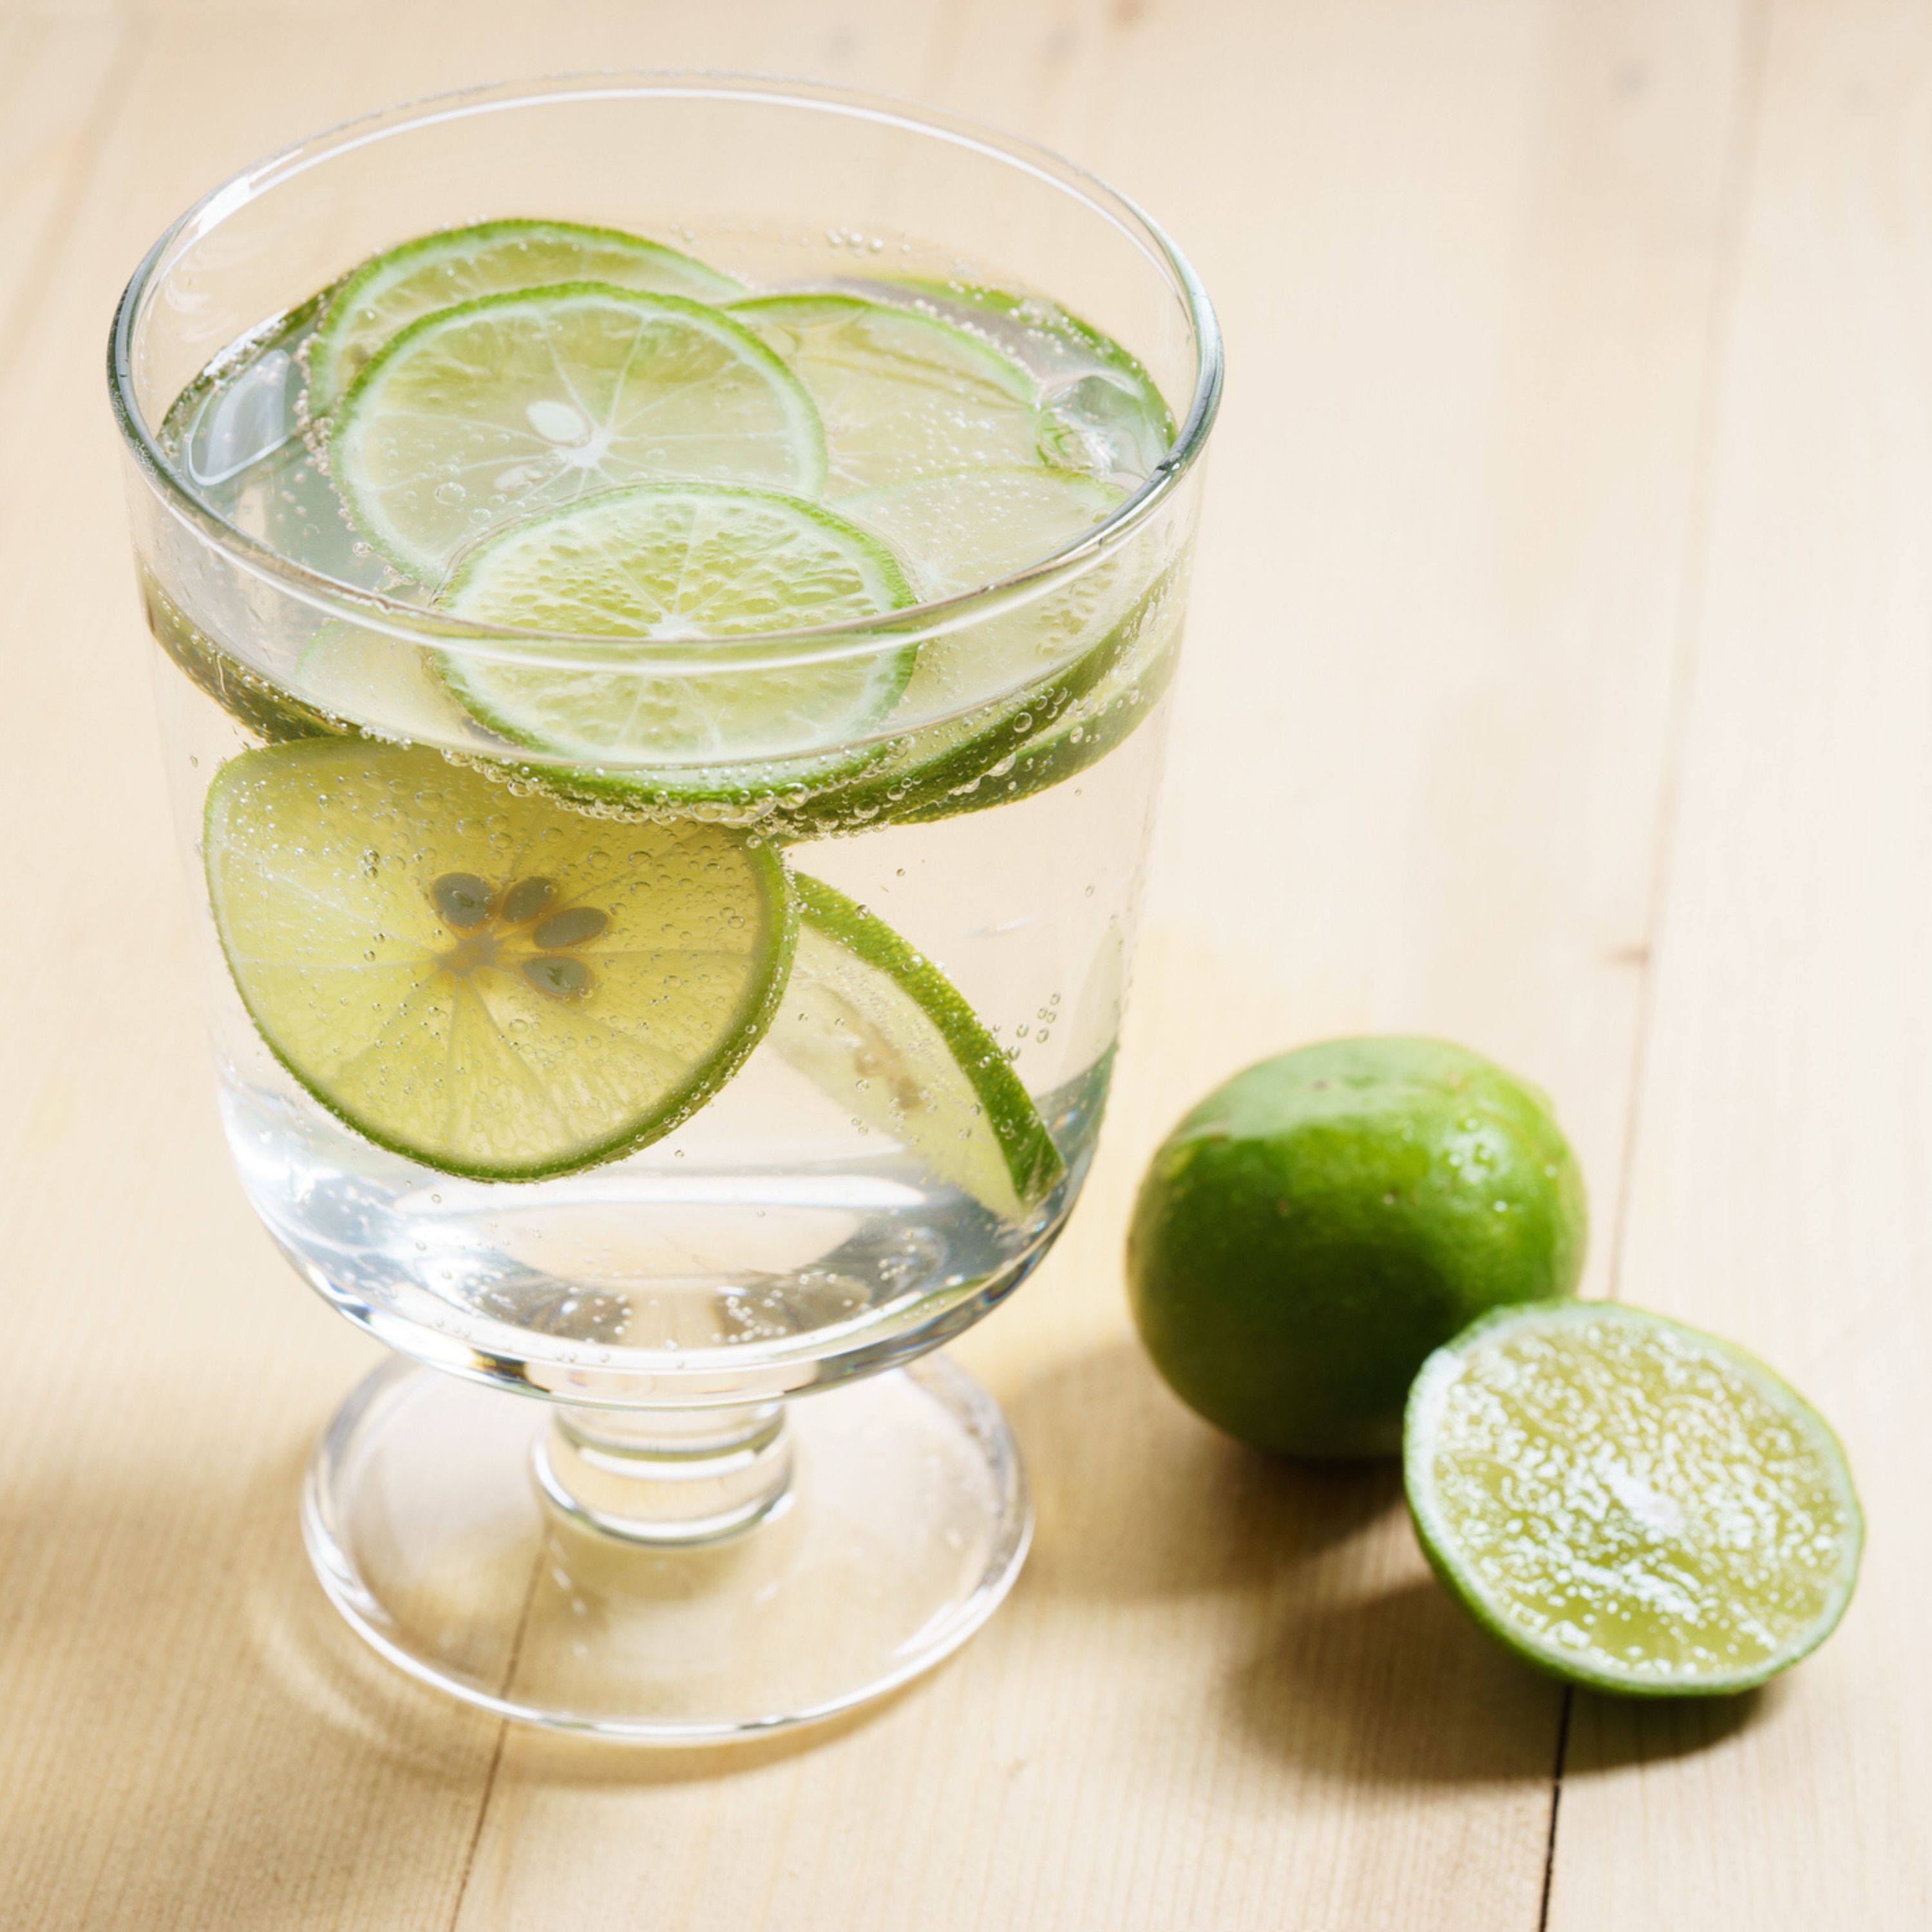 ritual con limón: cómo utilizarlo para eliminar las malas energías